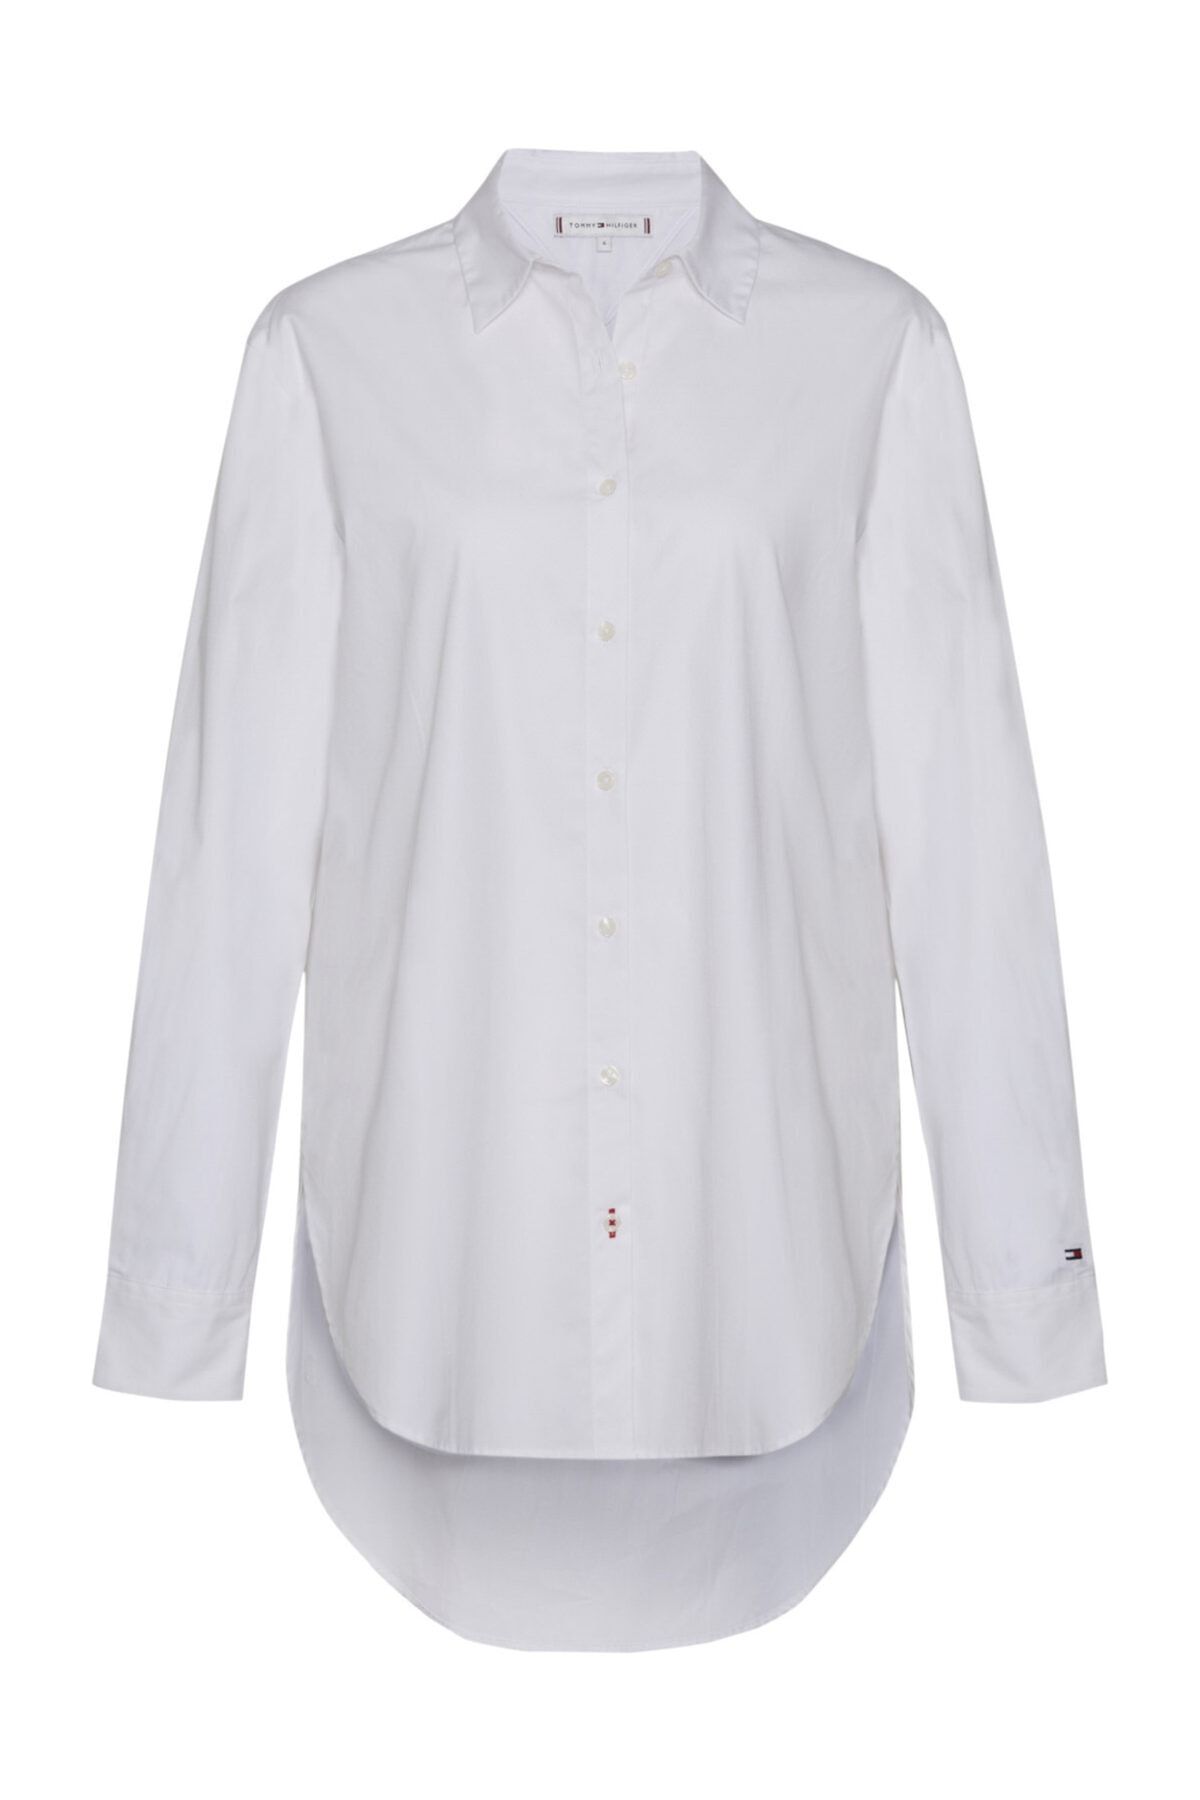 Tommy Hilfiger Kadın Beyaz Gömlek icon Monica Girlfriend Shirt Ls WW0WW23984